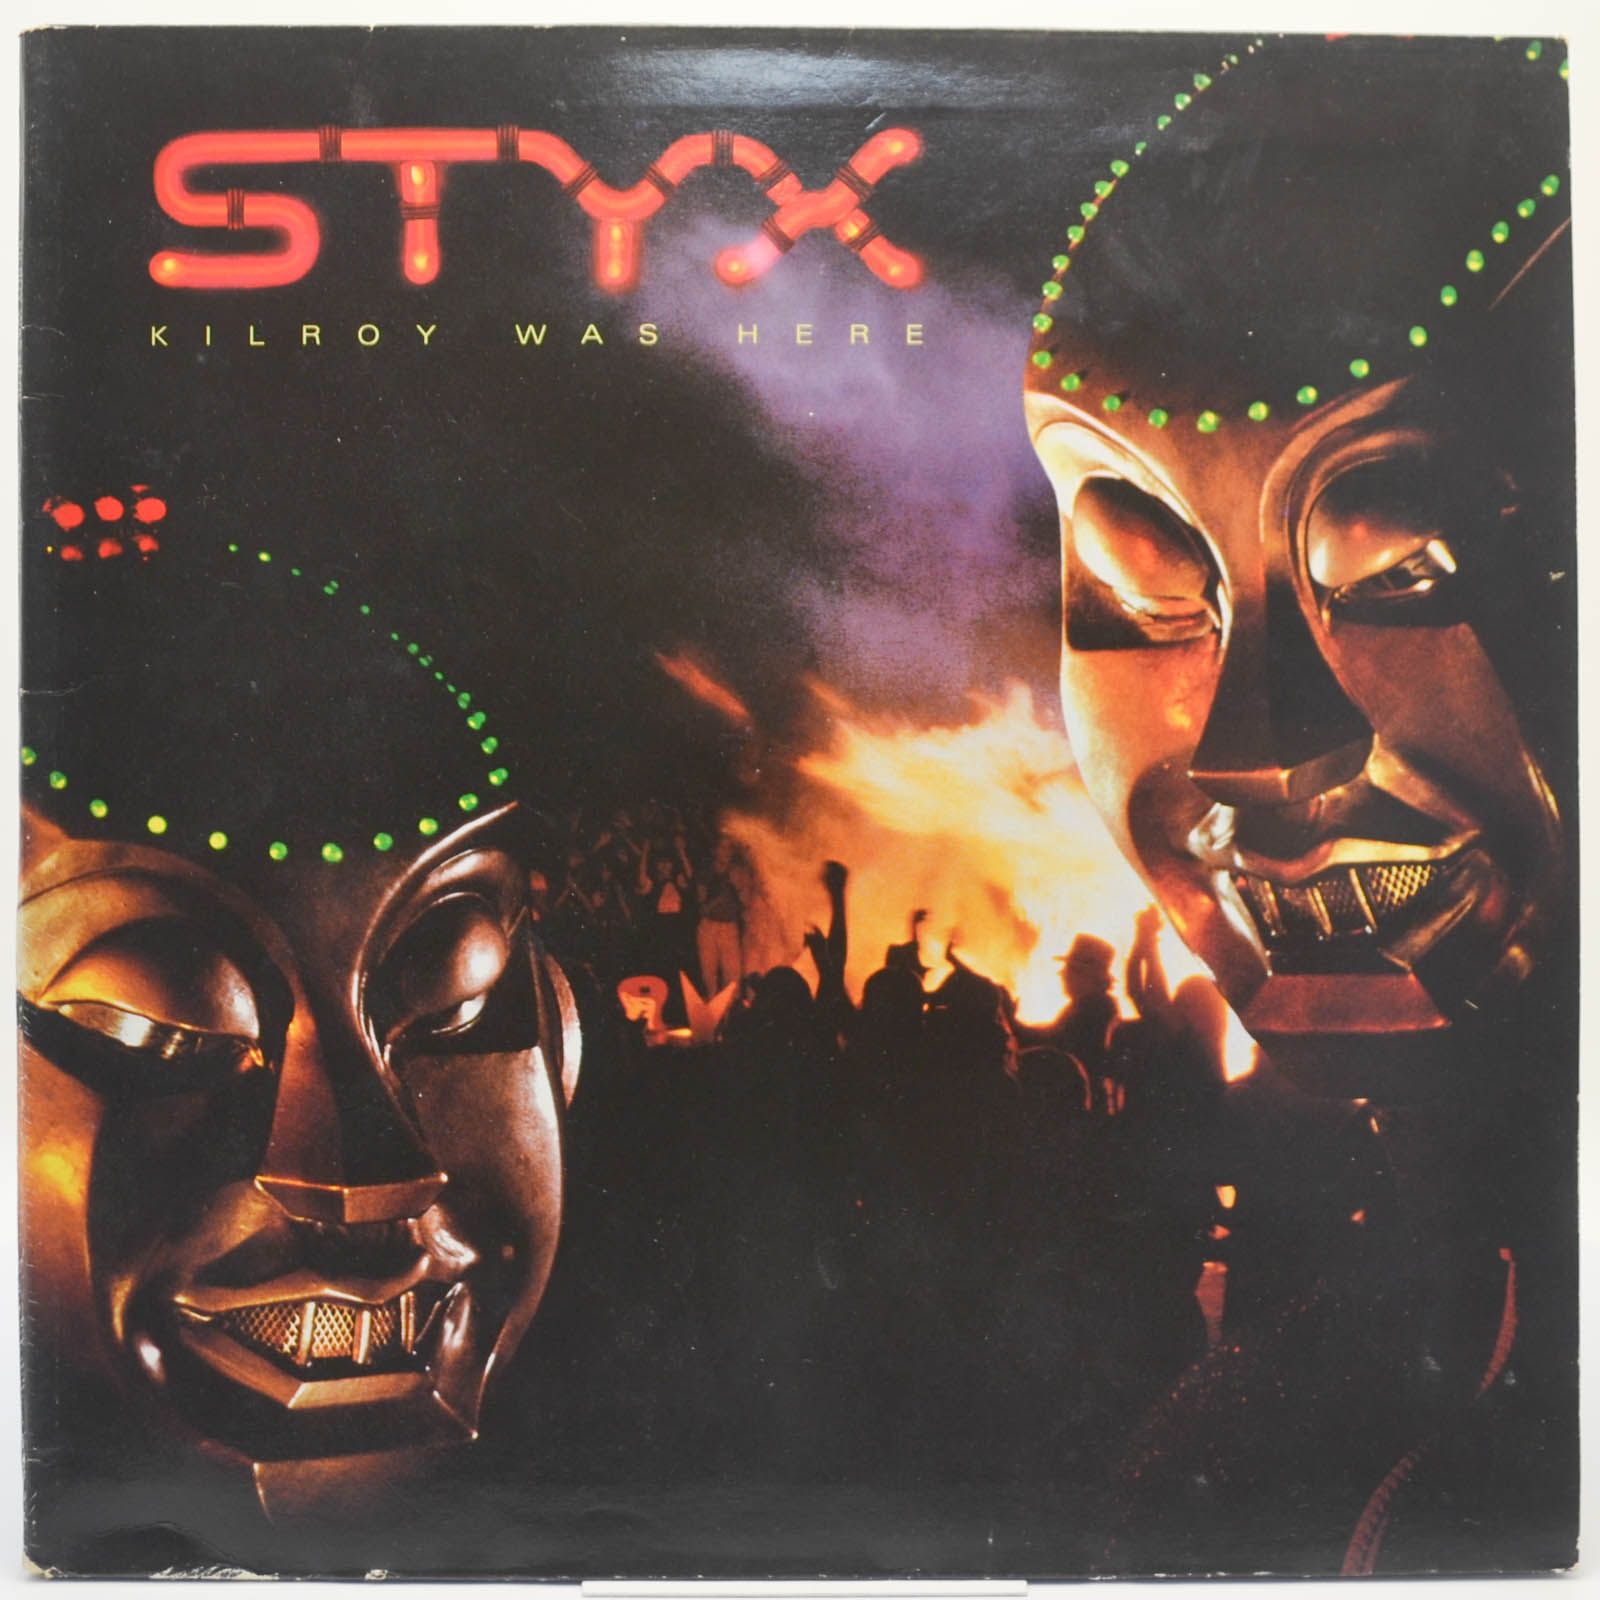 Styx — Kilroy Was Here, 1983